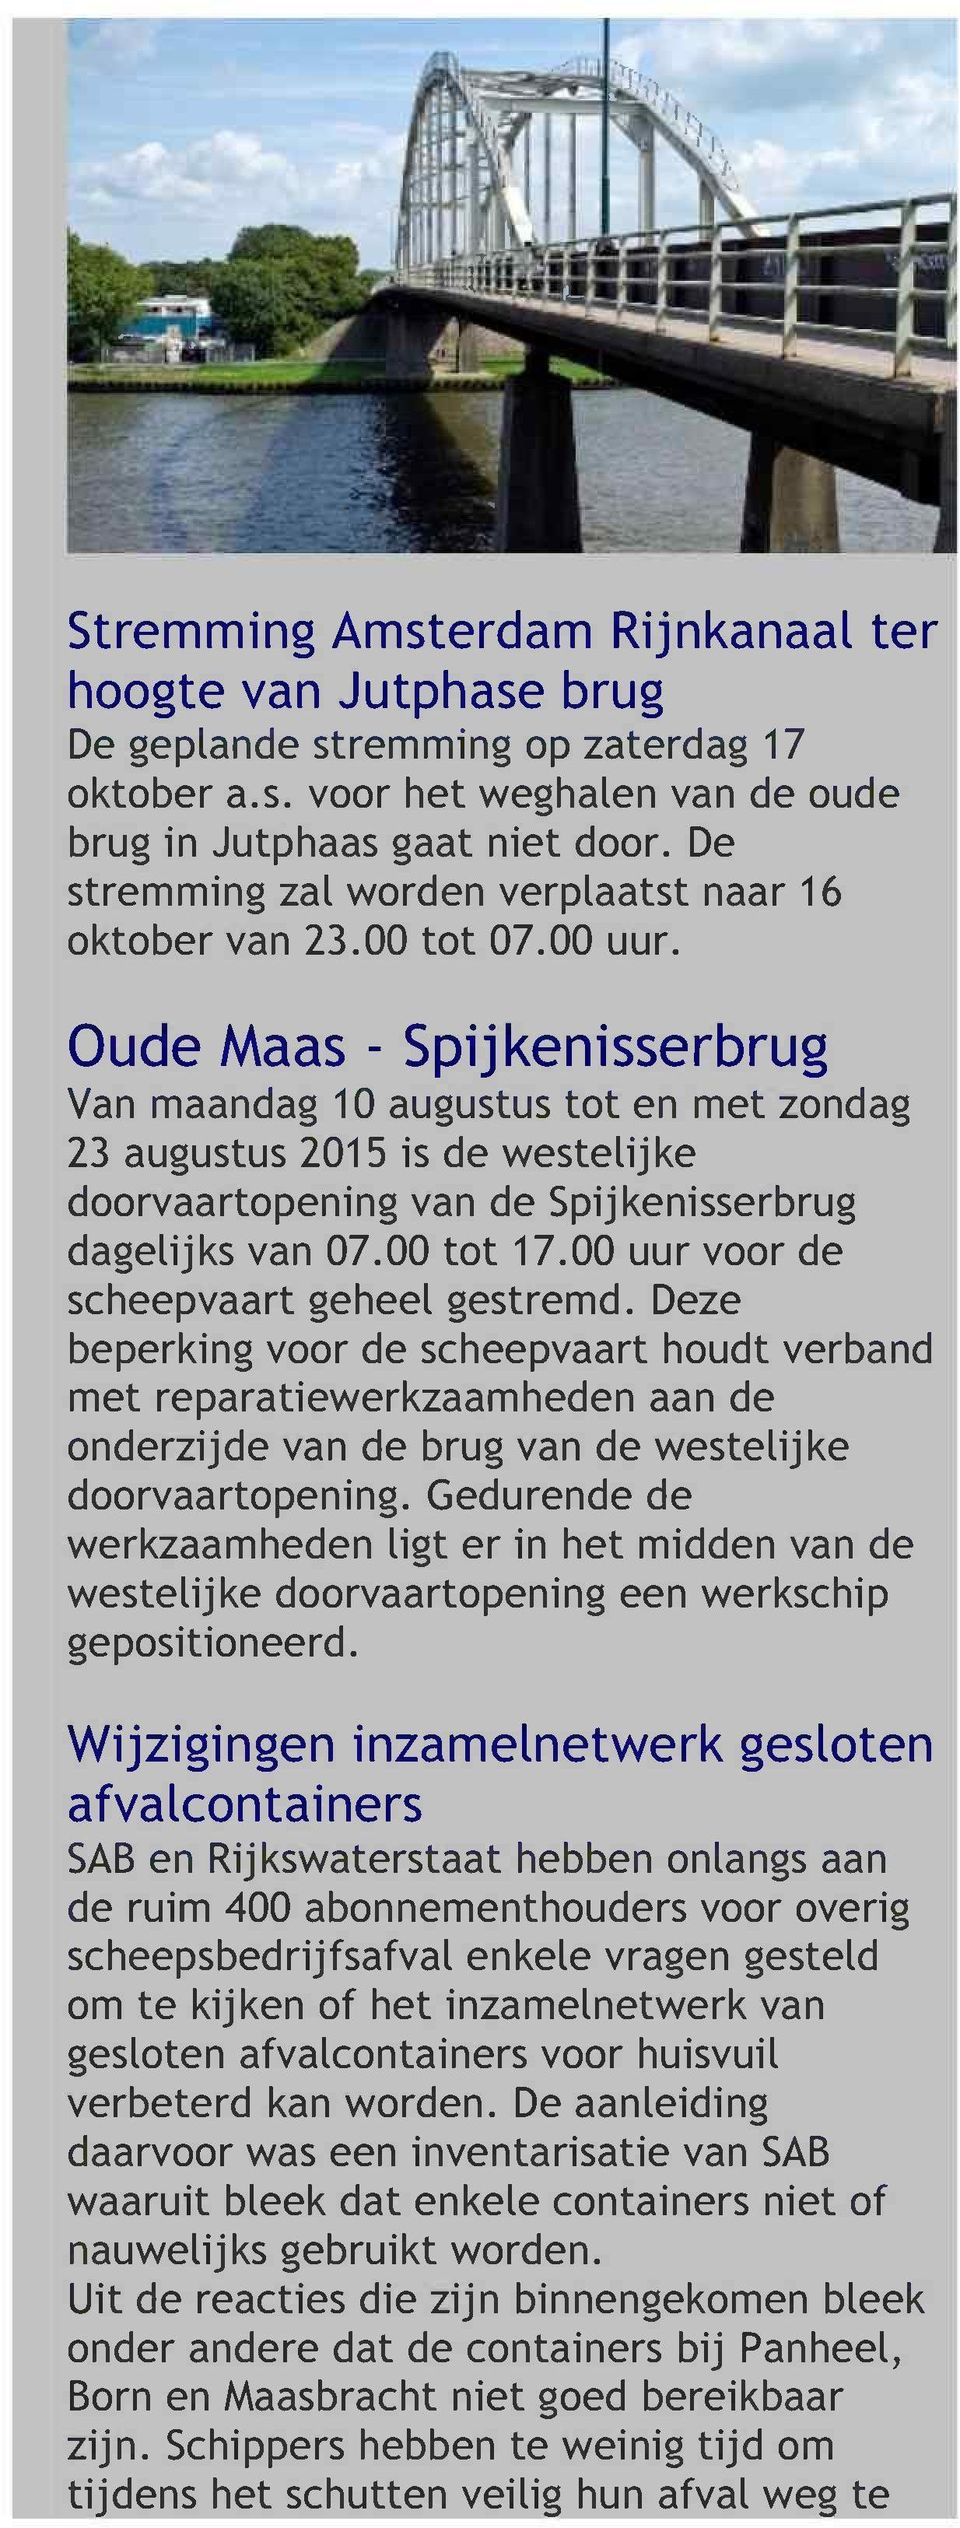 Oude Maas - Spij kenisserbrug Van maandag 10 augustus tot en met zondag 23 augustus 2015 is de westelijke doorvaartopening van de Spijkenisserbrug dagelijks van 07.00 tot 17.